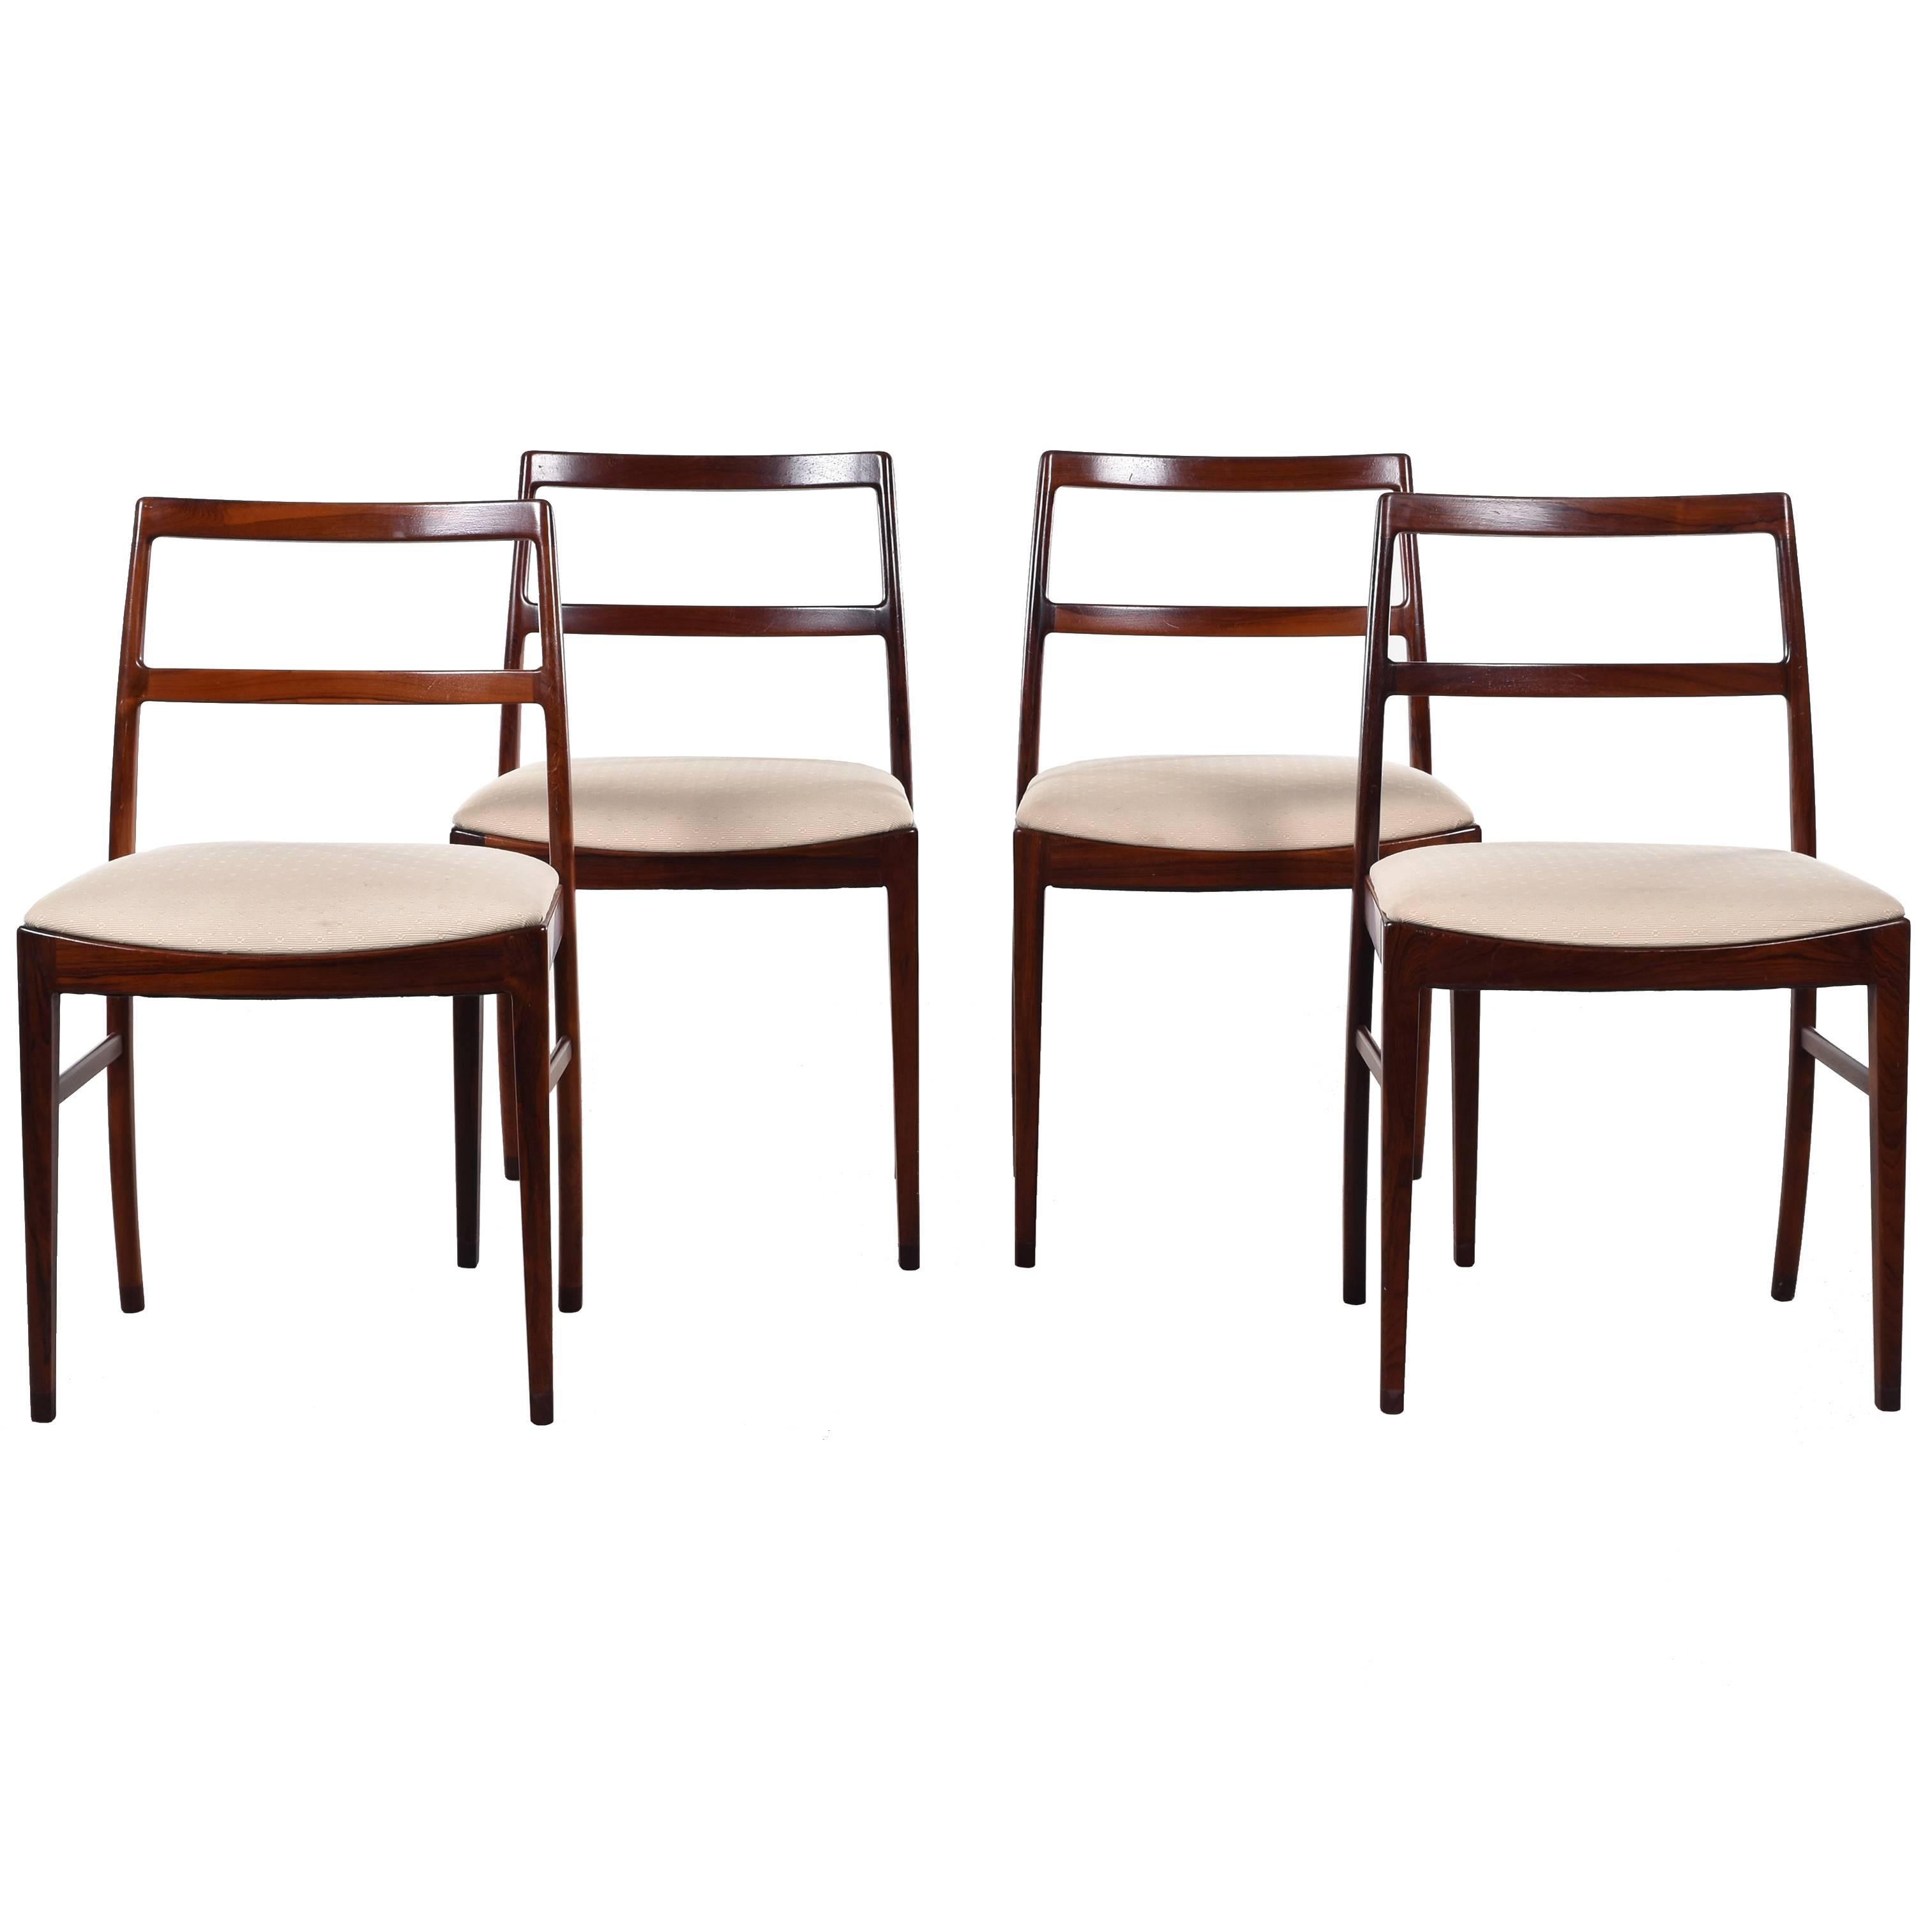 Arne Vodder Model 430 Dining Chairs for Sibast Møbler